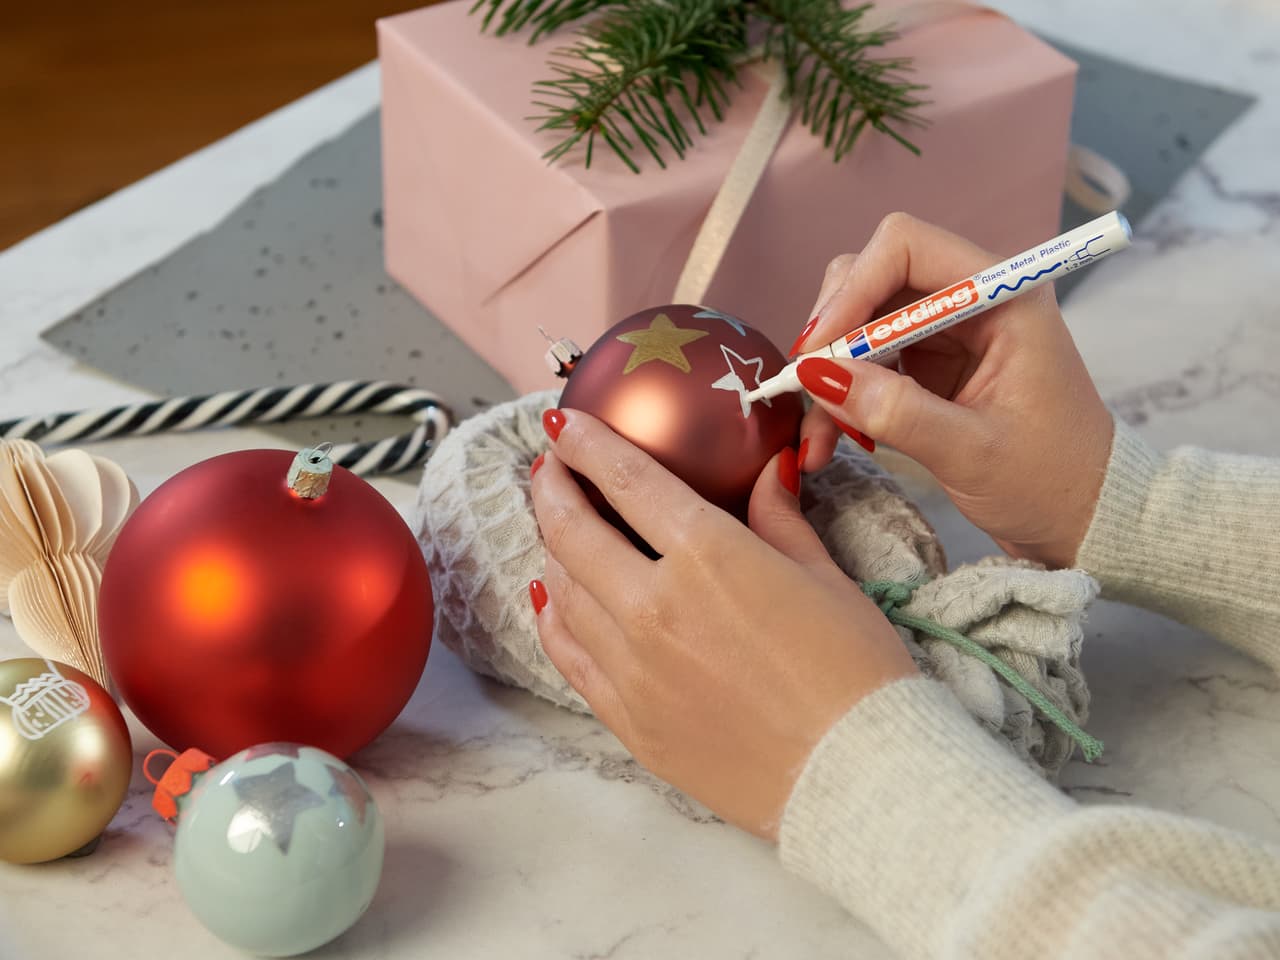 Personalisieren Sie einen Weihnachtsschmuck: Hände dekorieren sorgfältig eine festliche rote Kugel mit einem edding 751 Glanzlackmarker 3er-Set auf Glasoberflächen, mit zusätzlicher Weihnachtsdekoration und einer Geschenkbox in der Nähe.